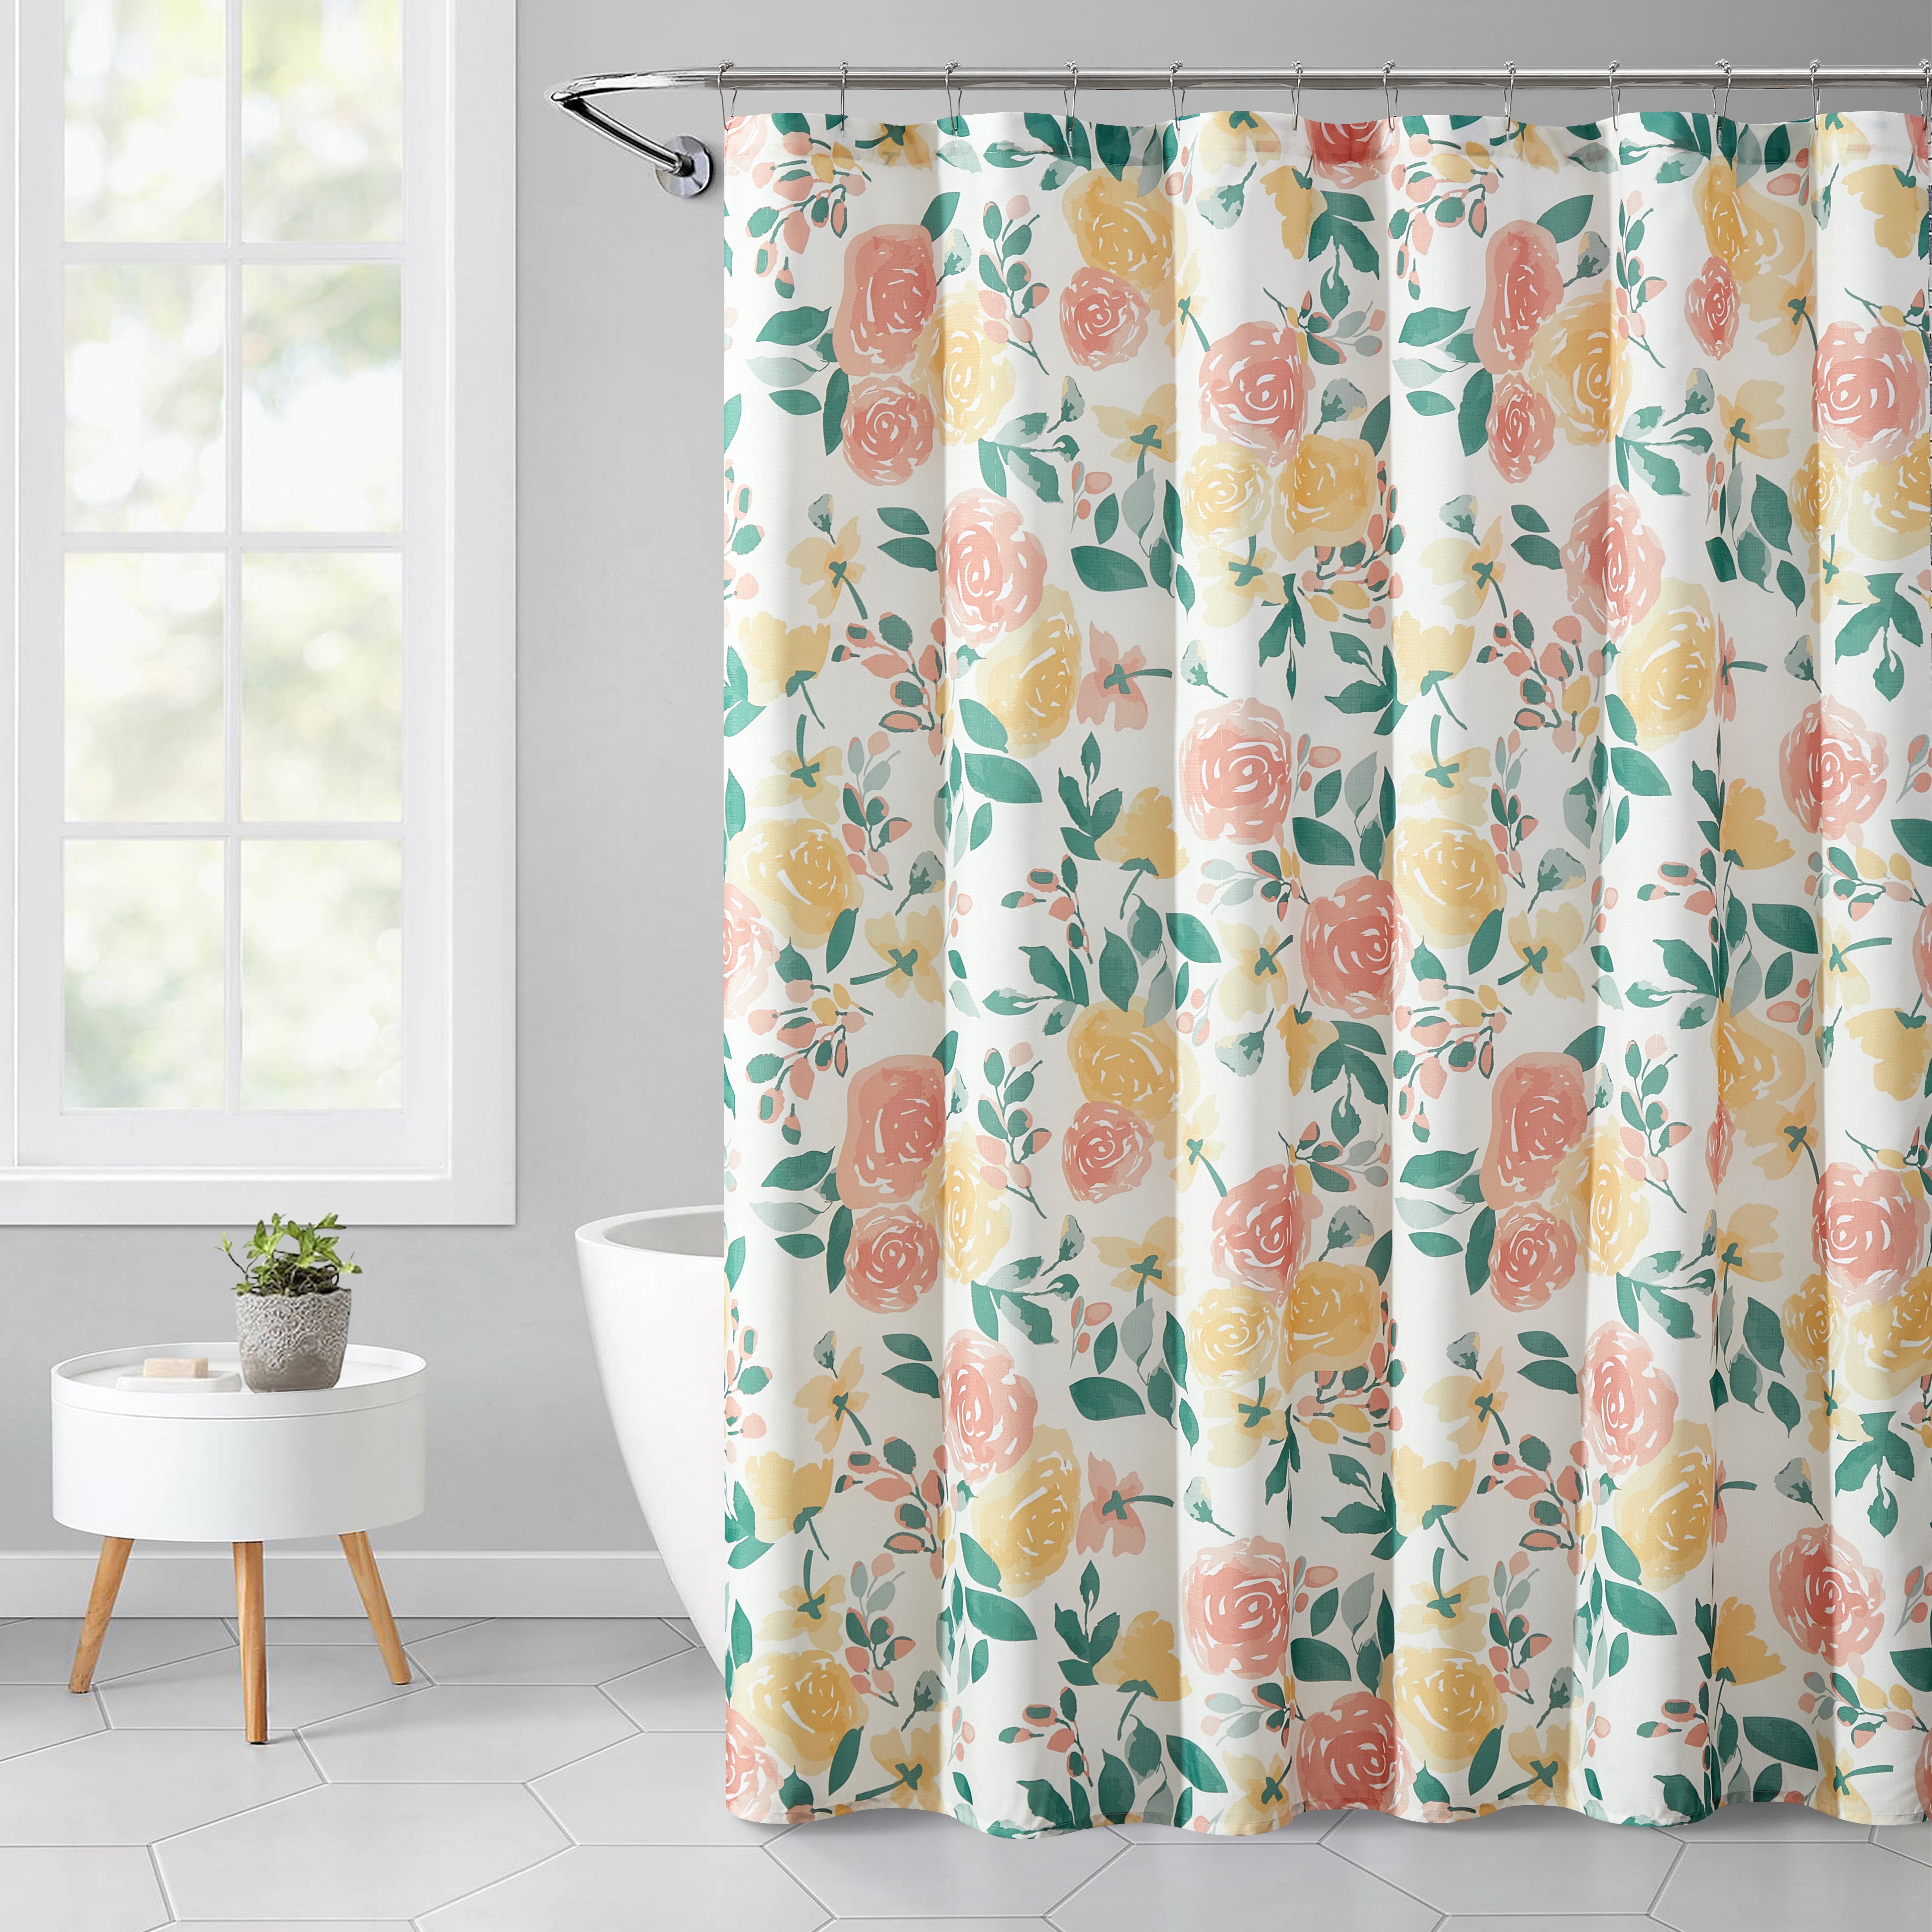 Flower Eyes Waterproof Bathroom Polyester Shower Curtain Liner Water Resistant 